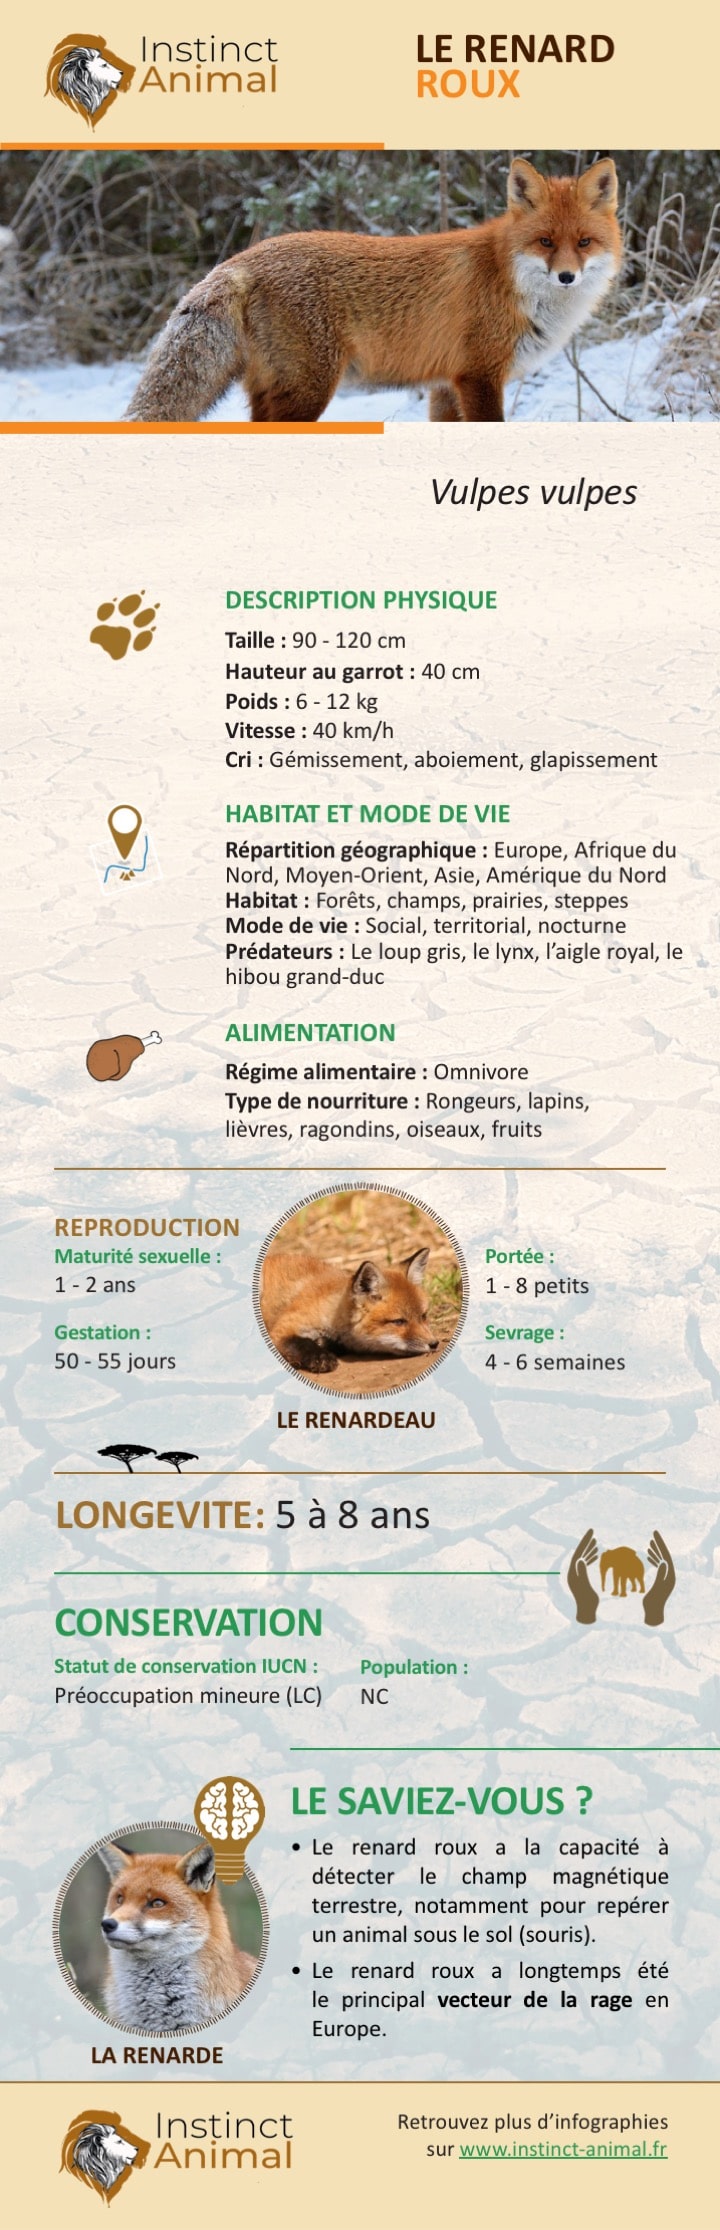 Description du renard roux - Infographie - Instinct Animal